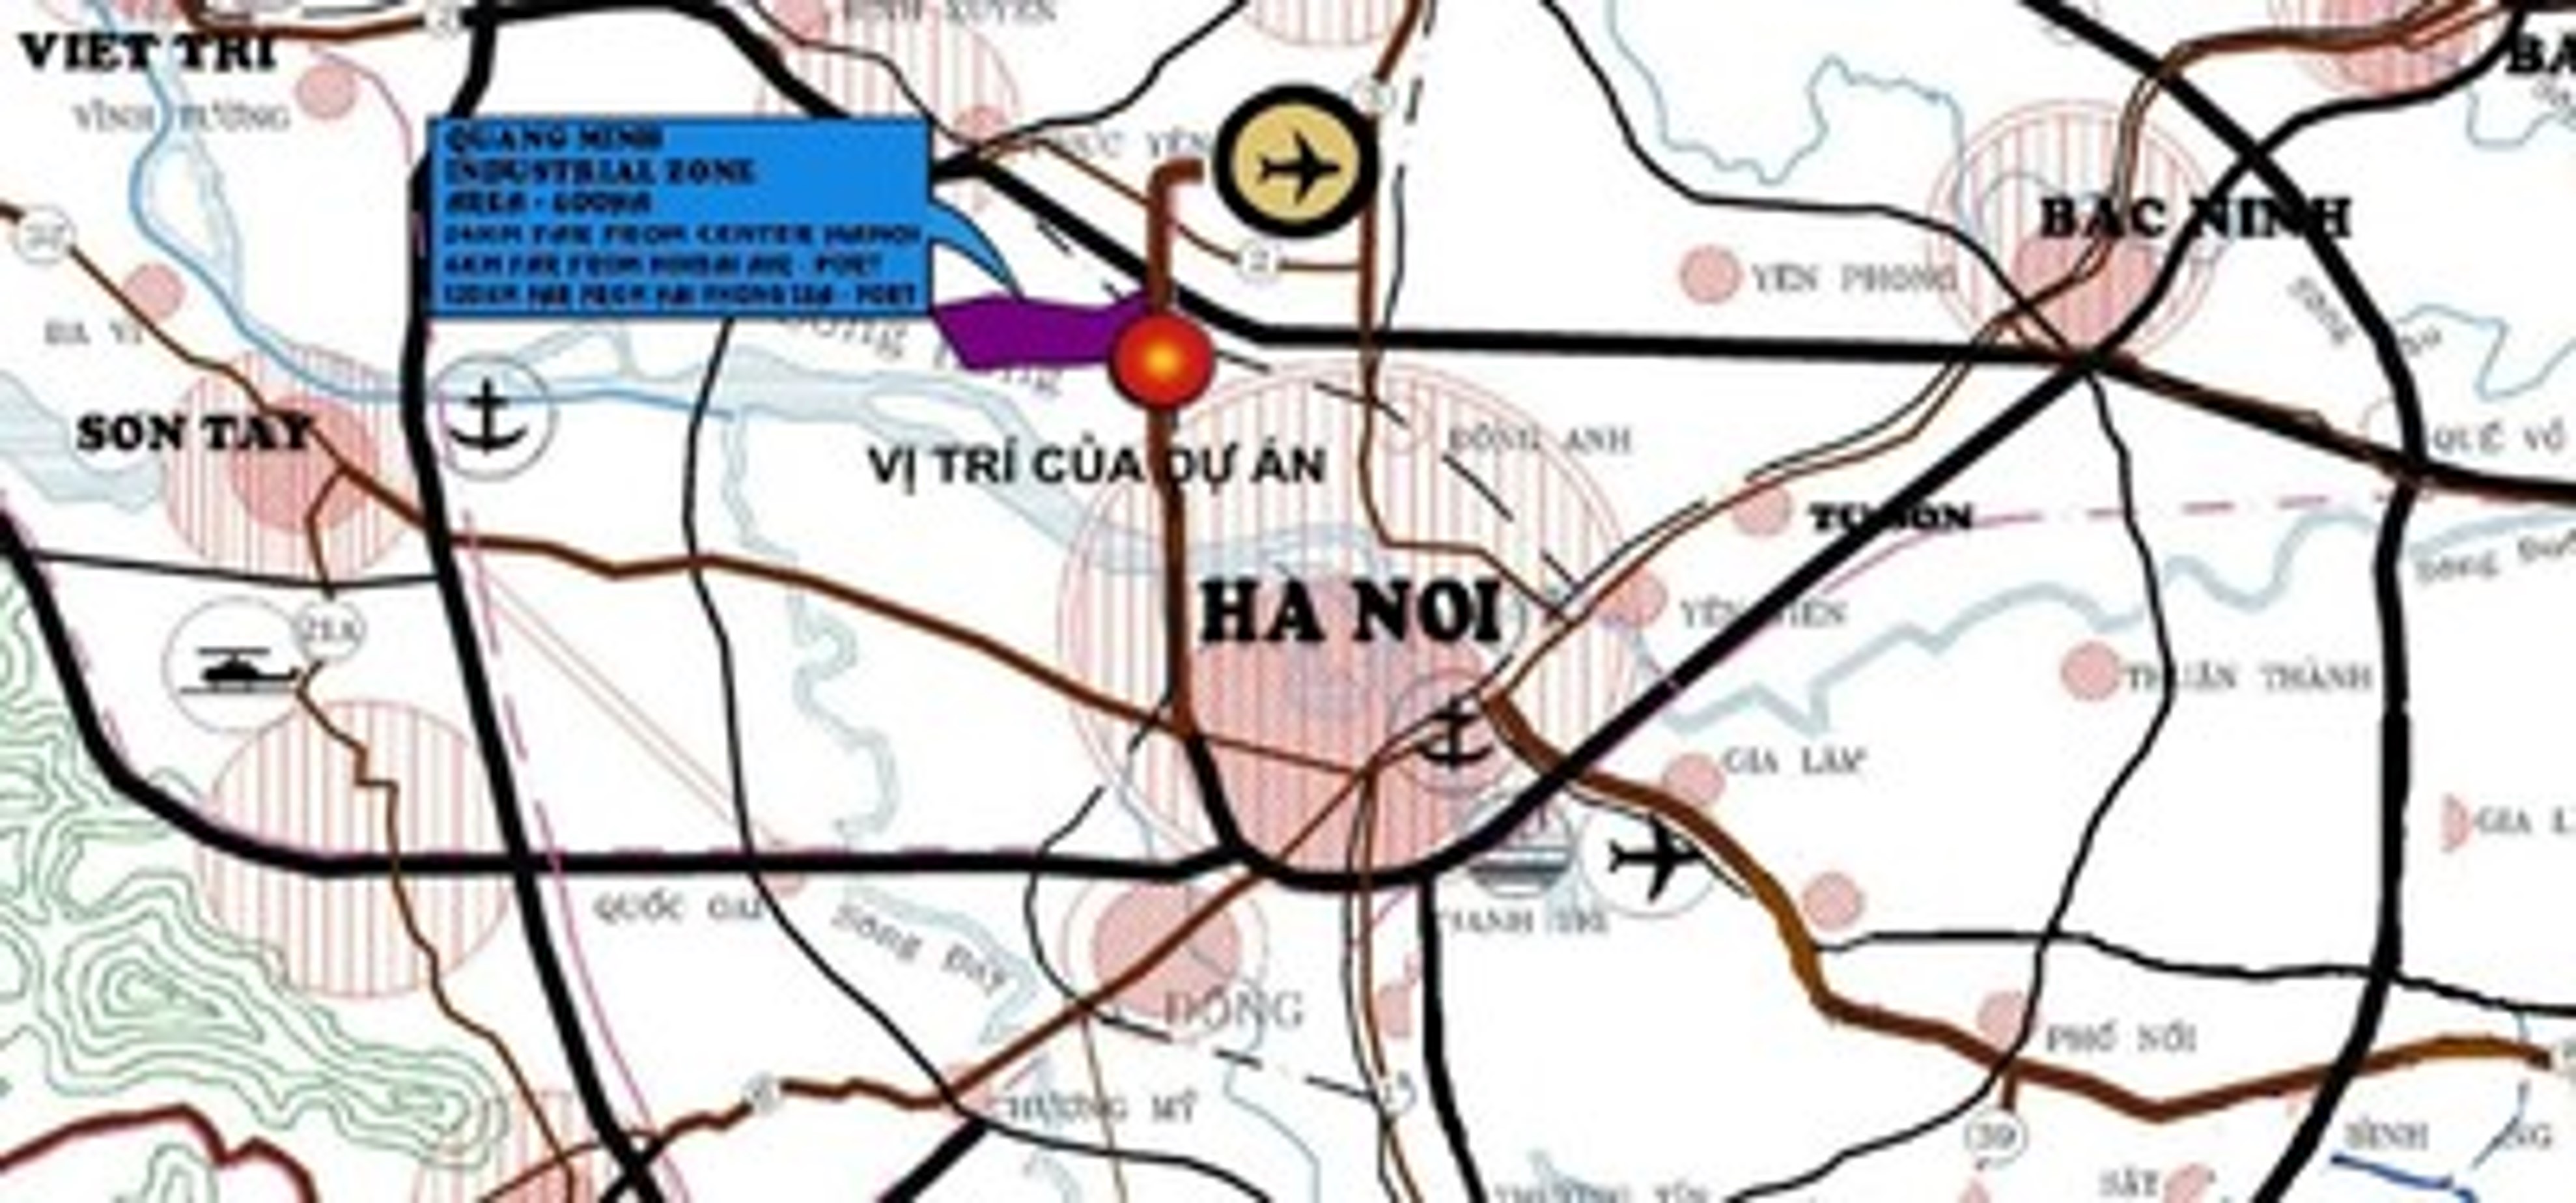 Quang Minh Industrial Park